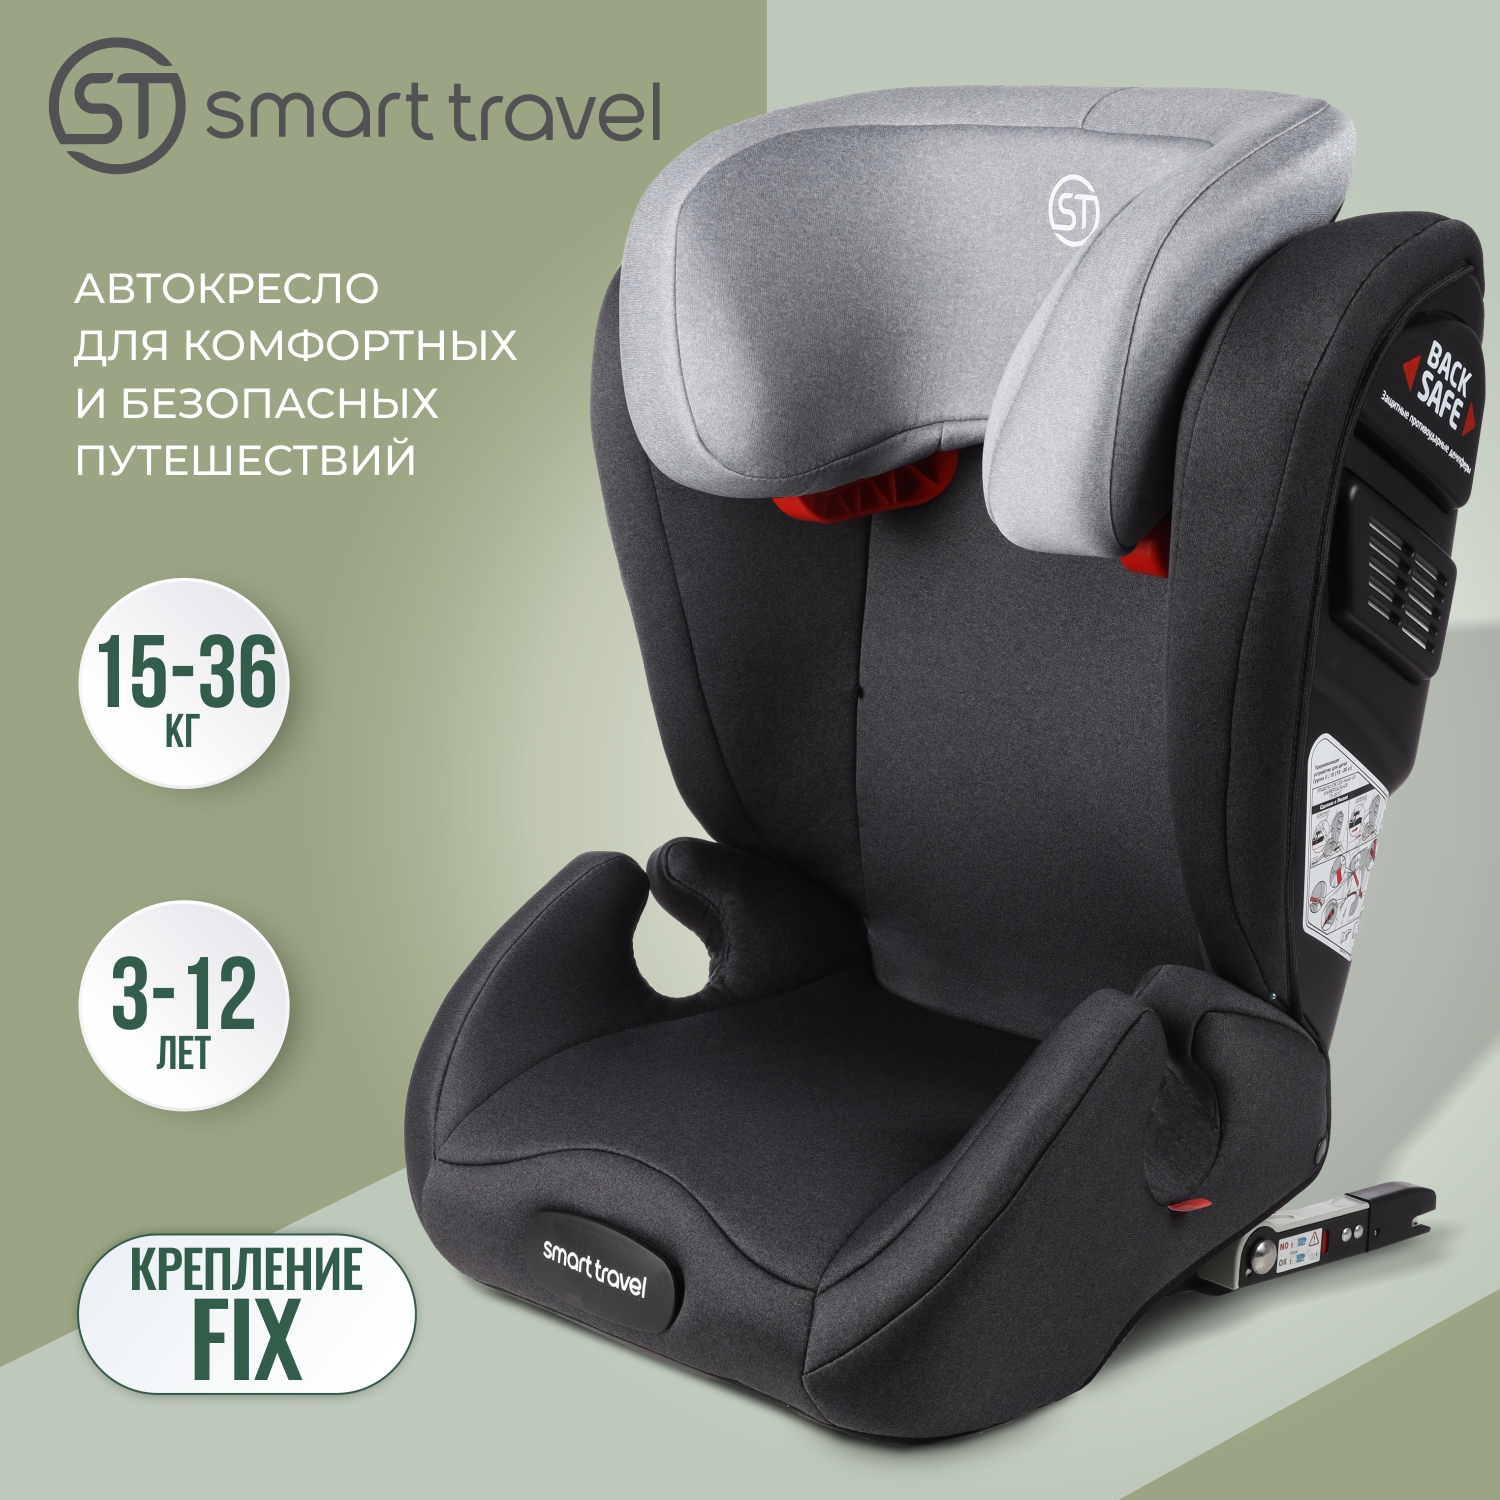 Детское автокресло Smart Travel Expert FIX, группа 2-3, 3-12 лет, 15-36 кг, dark grey бустер smart travel trust fix